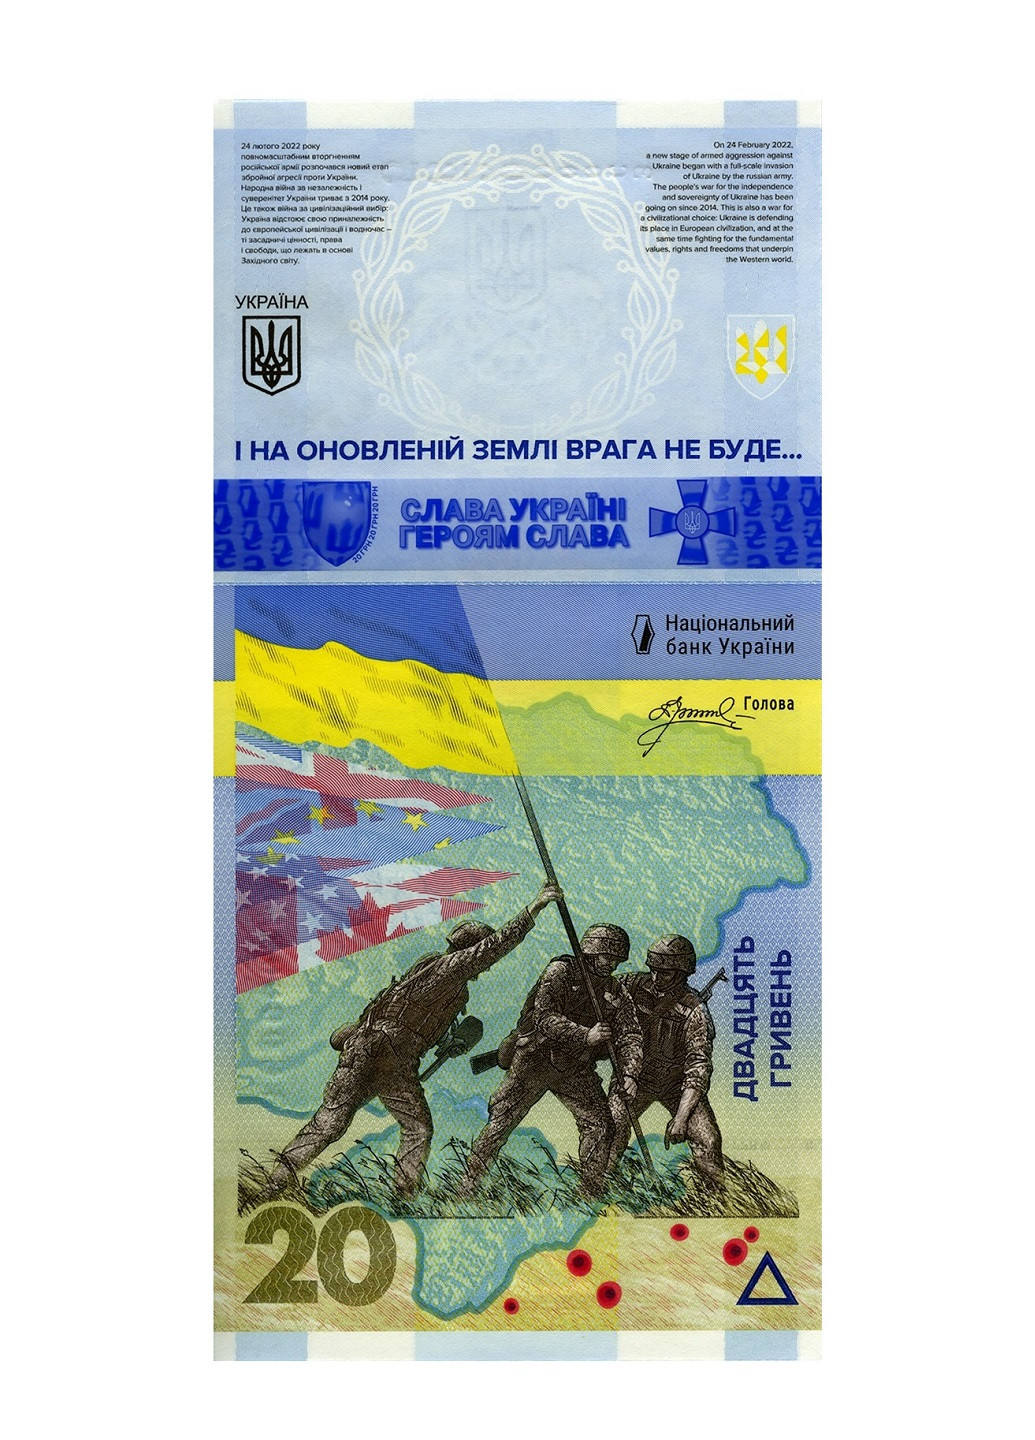 Банкнота України «ПАМ’ЯТАЄМО! НЕ ПРОБАЧИМО!» НБУ Blue Orange (258006328)